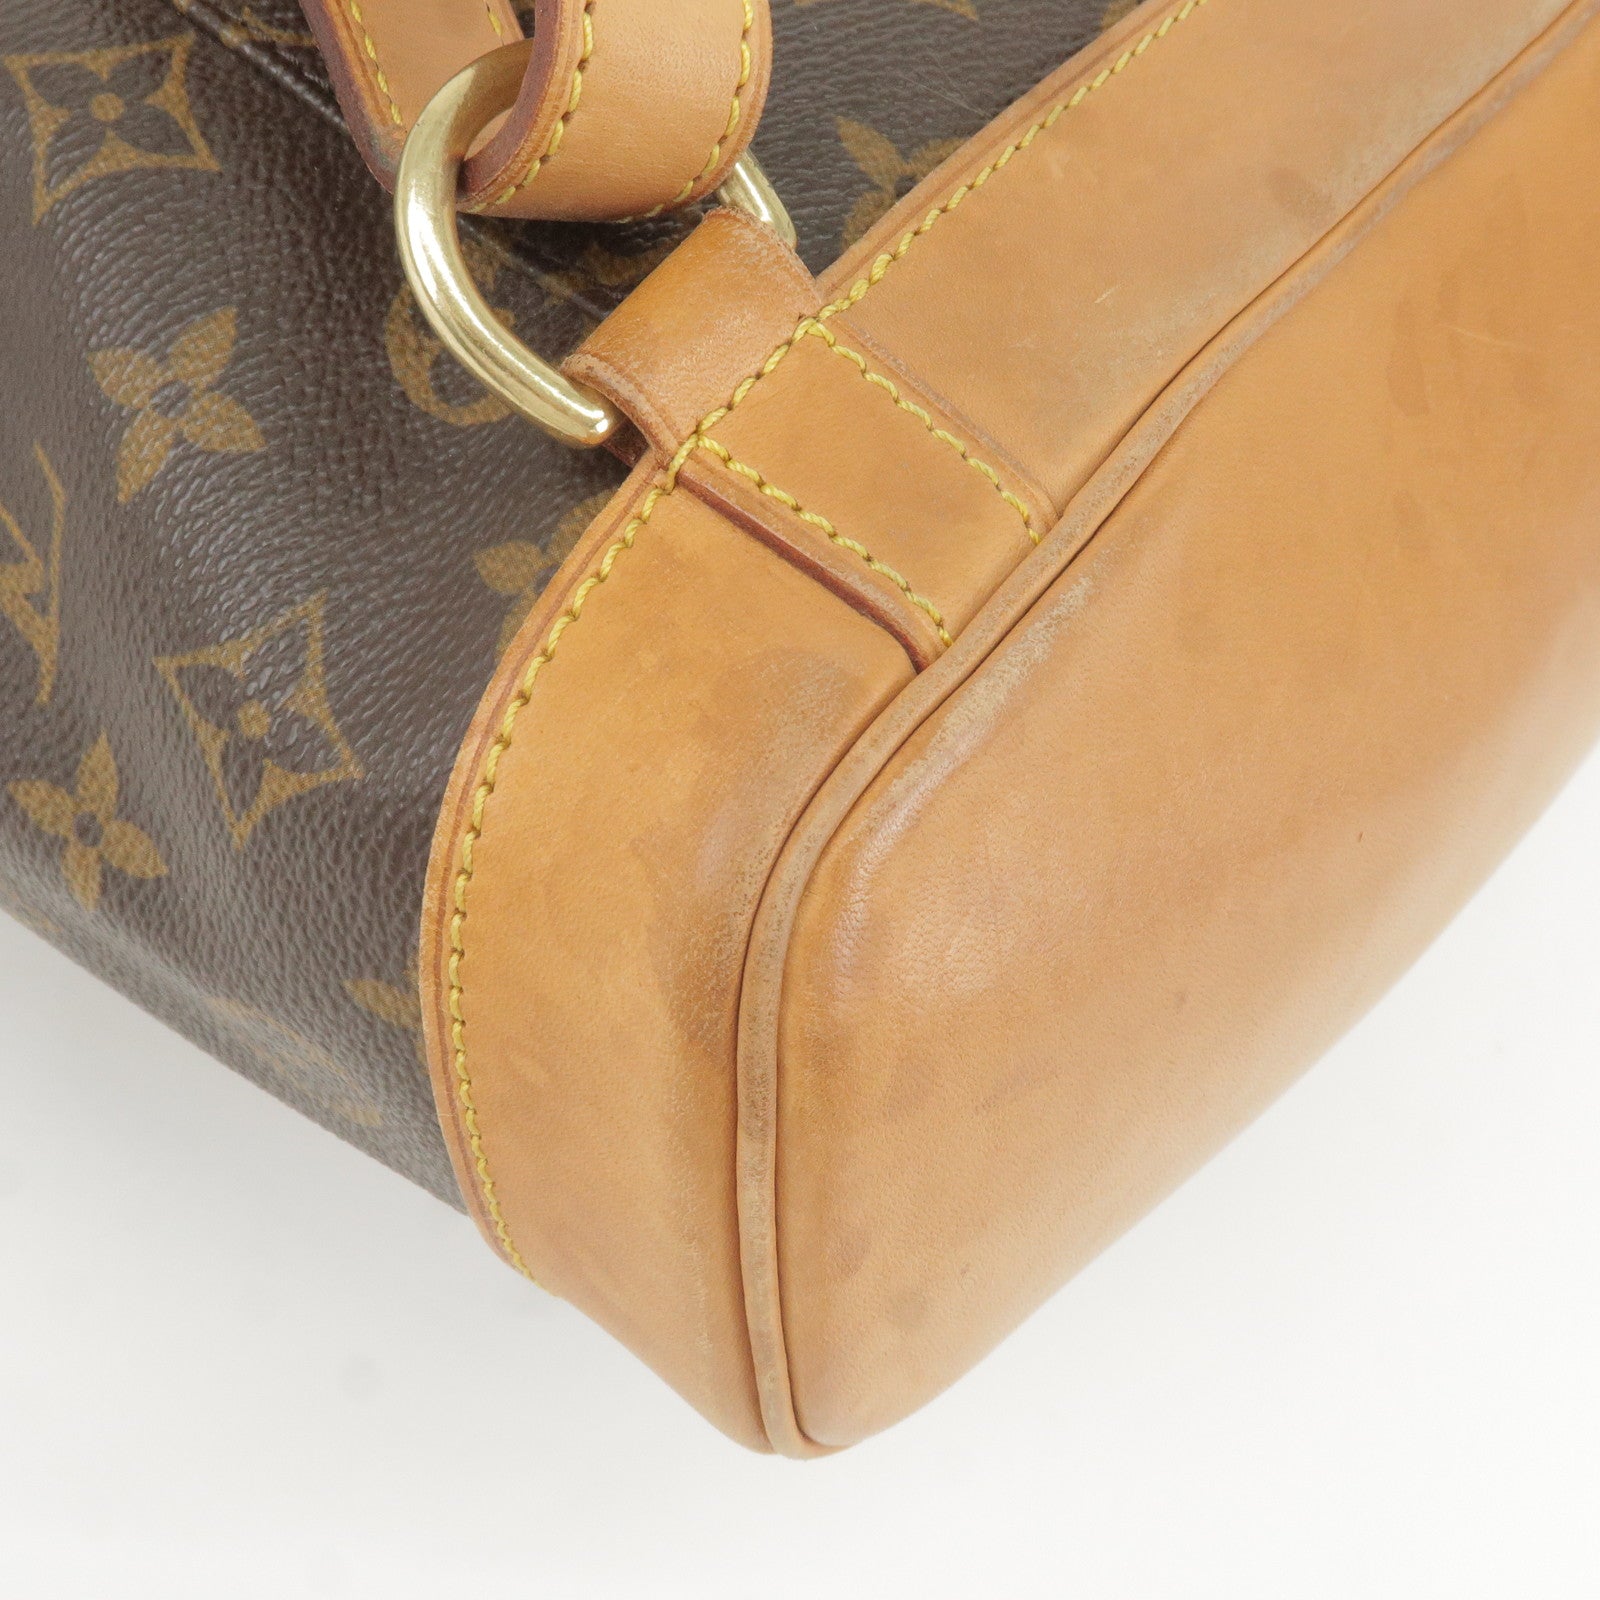 Louis Vuitton Montsouris Mm Backpack Monogram M51136 171008